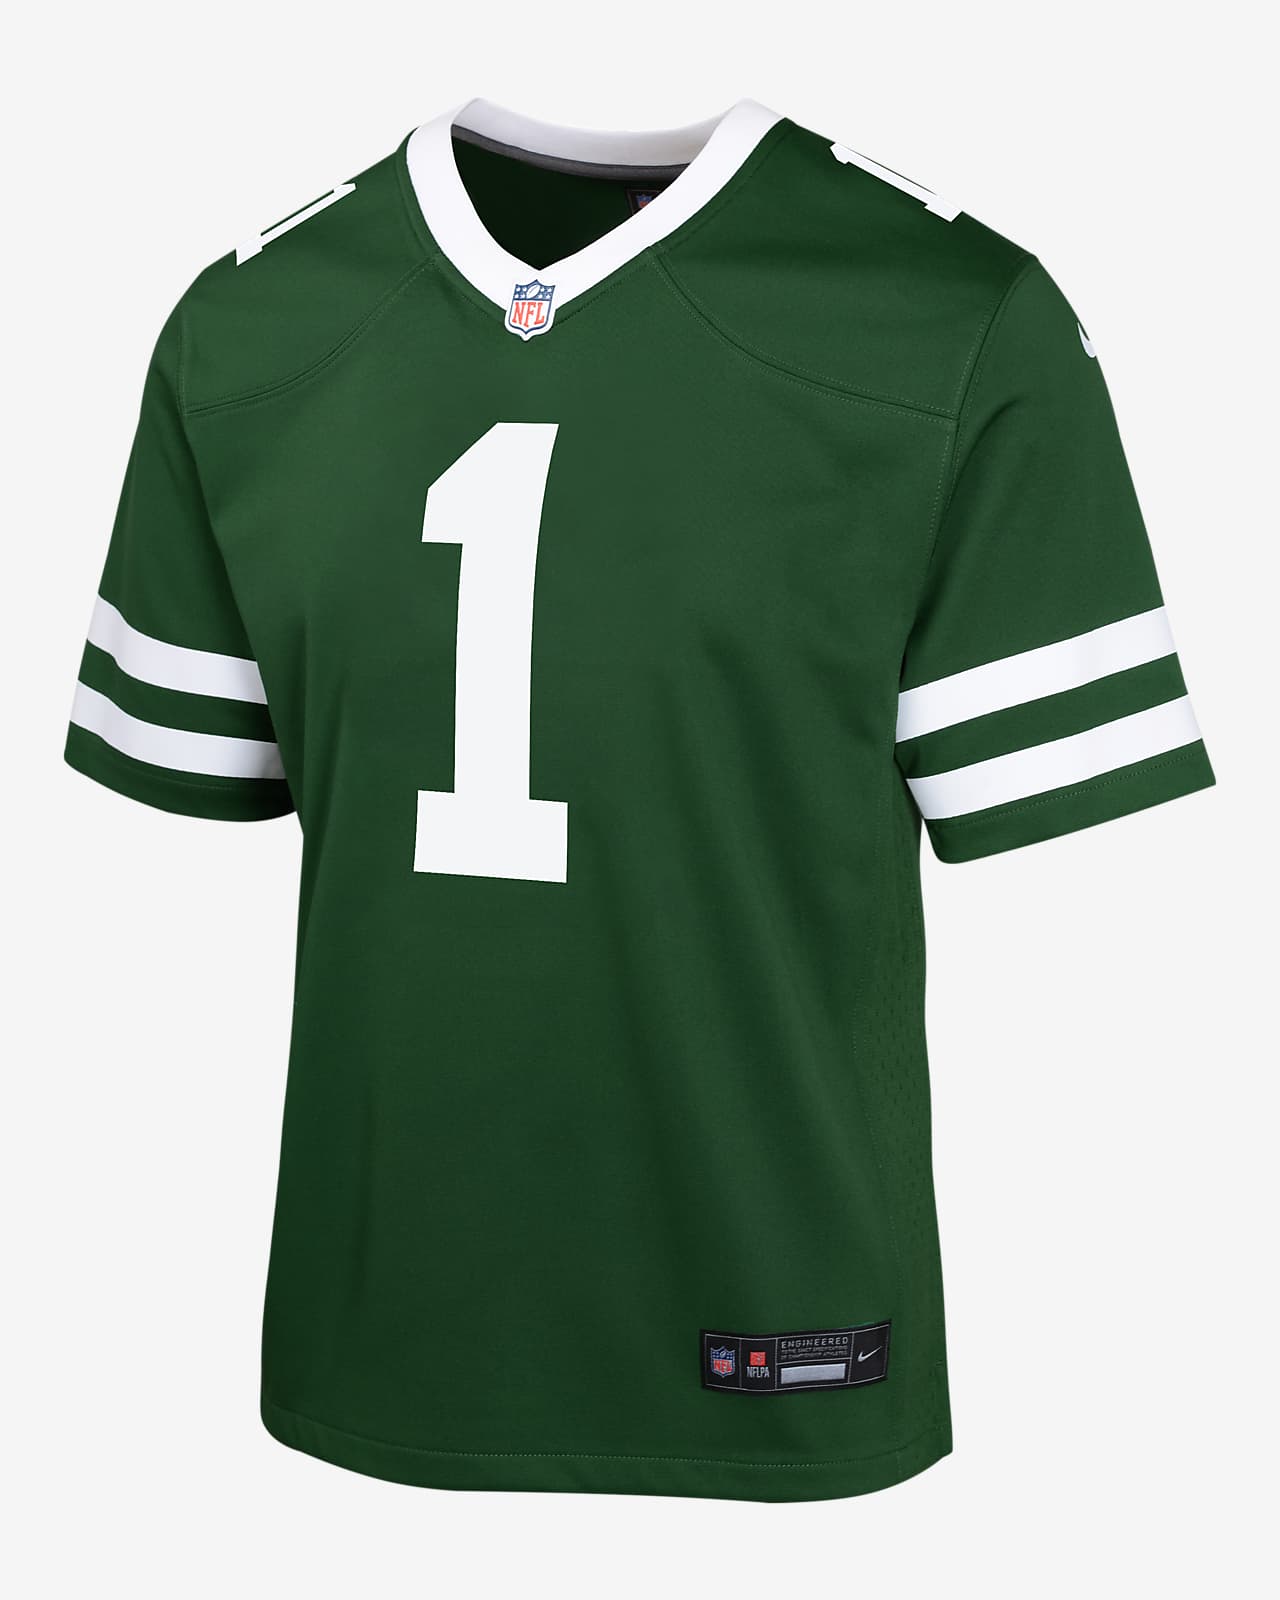 Sauce Gardner New York Jets Big Kids' Nike NFL Game Jersey